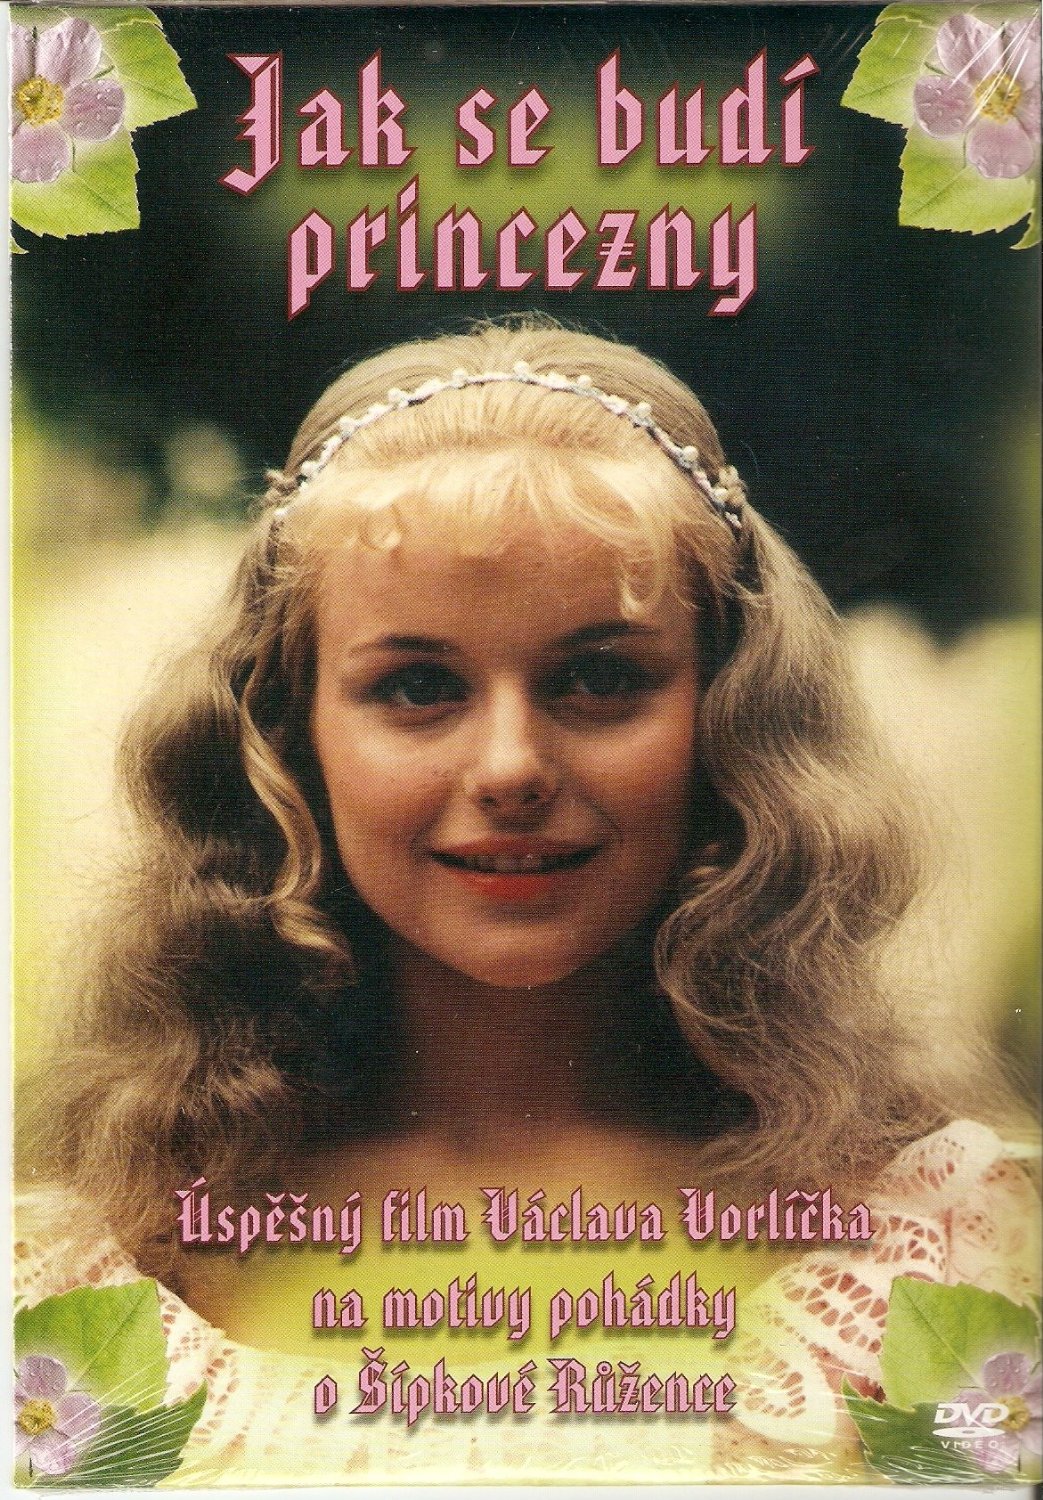 Jak se budí princezny (1978) with English Subtitles on DVD on DVD